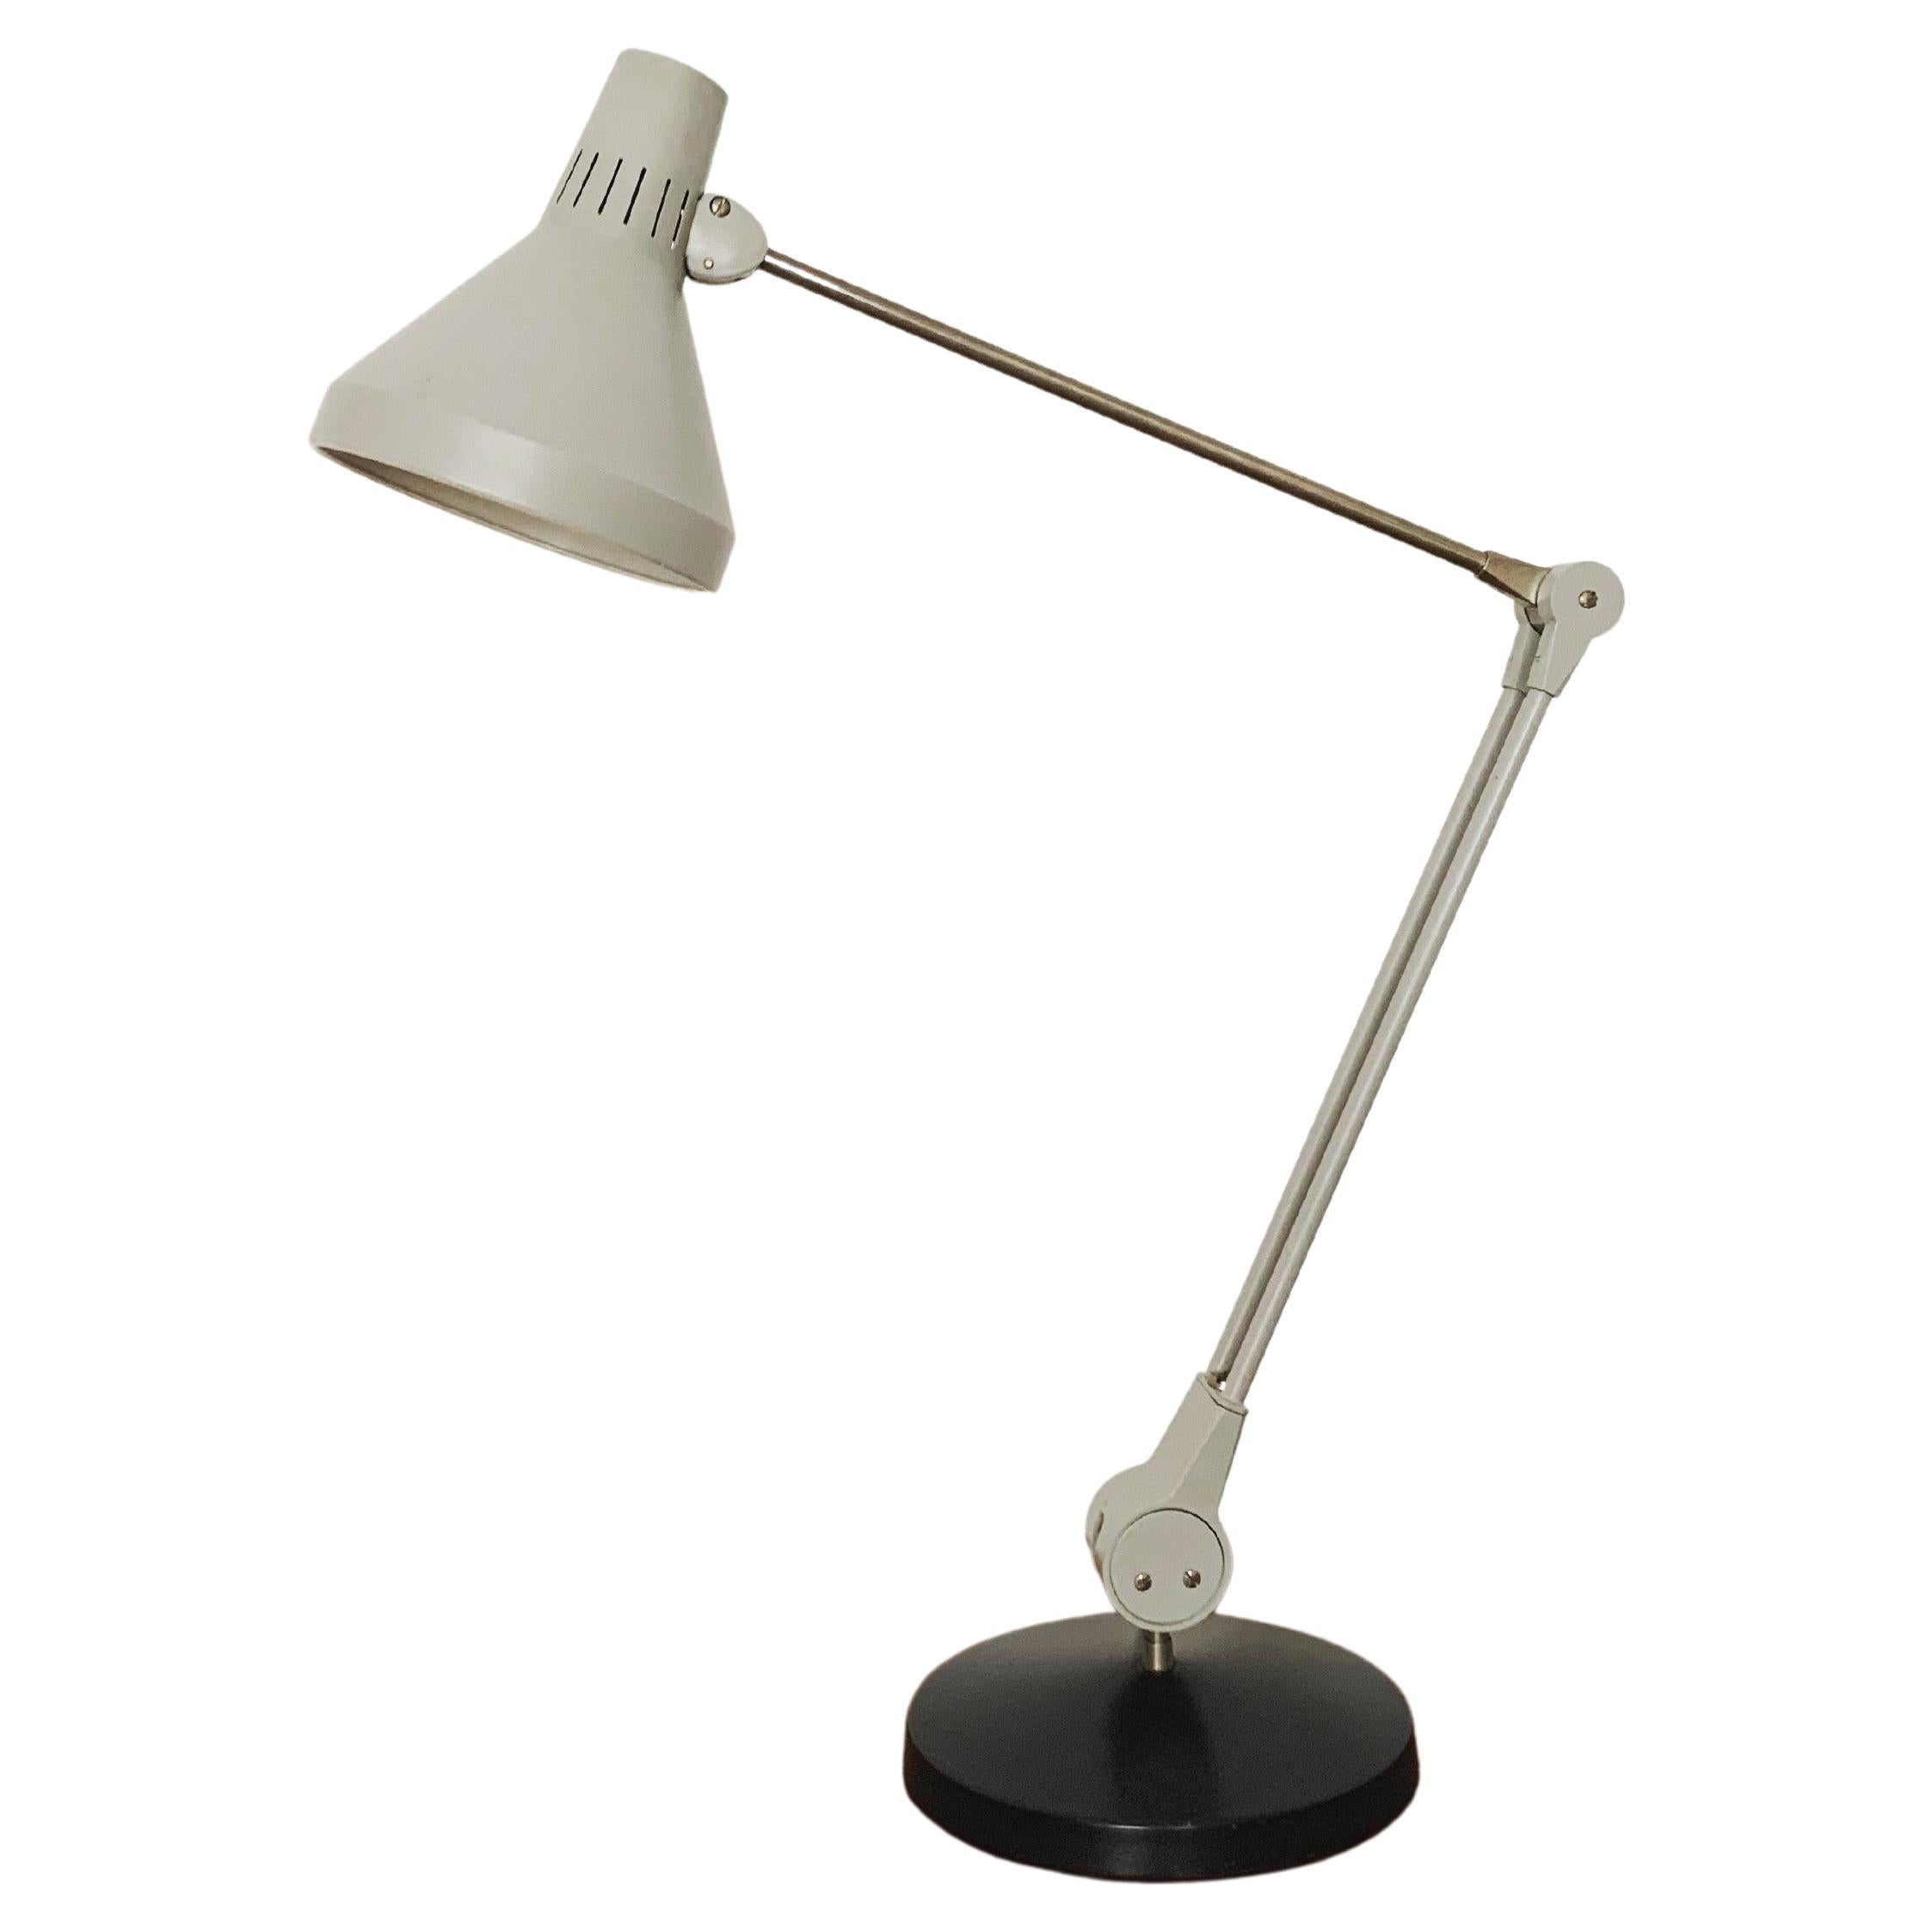 Adjustable table or desk lamp by Kaiser Leuchten